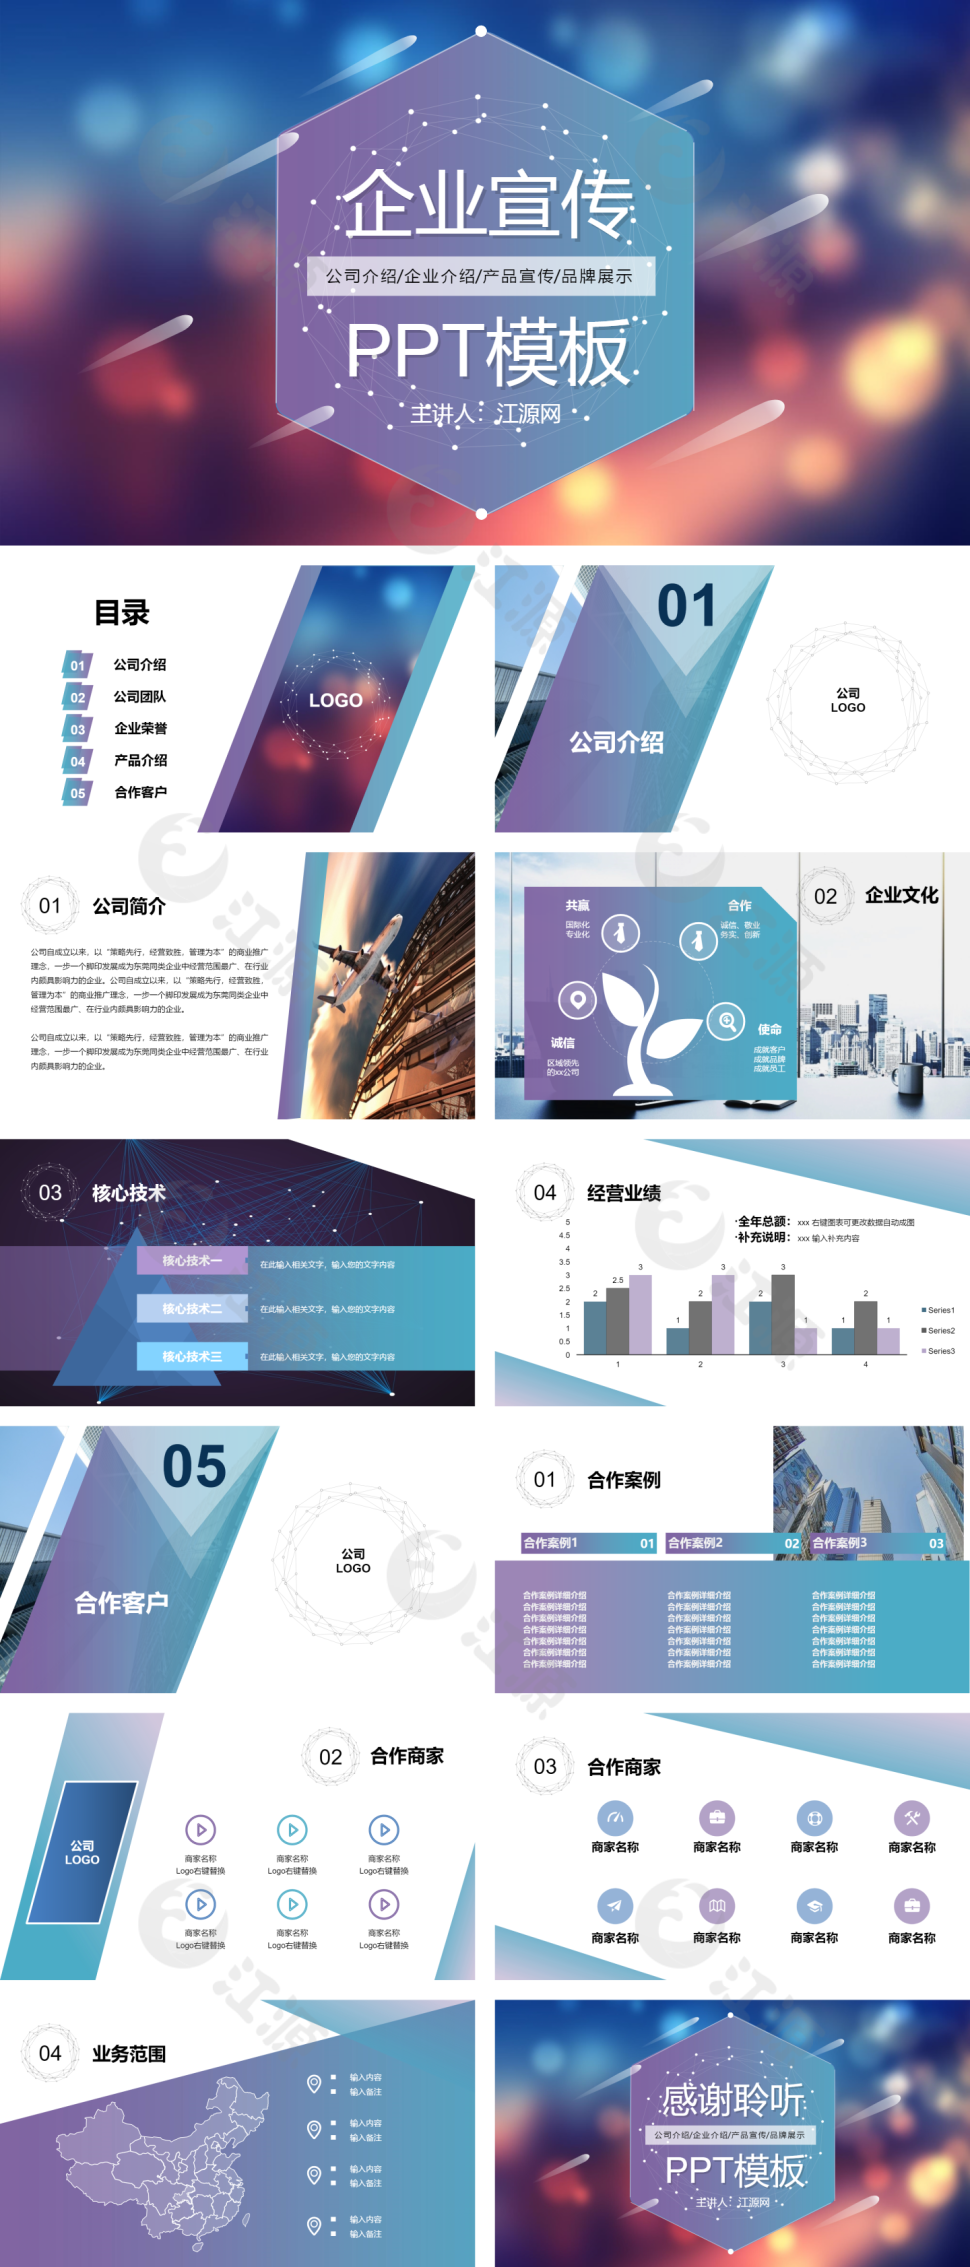 蓝紫色大气公司介绍产品简介企业宣传推广PPT模板